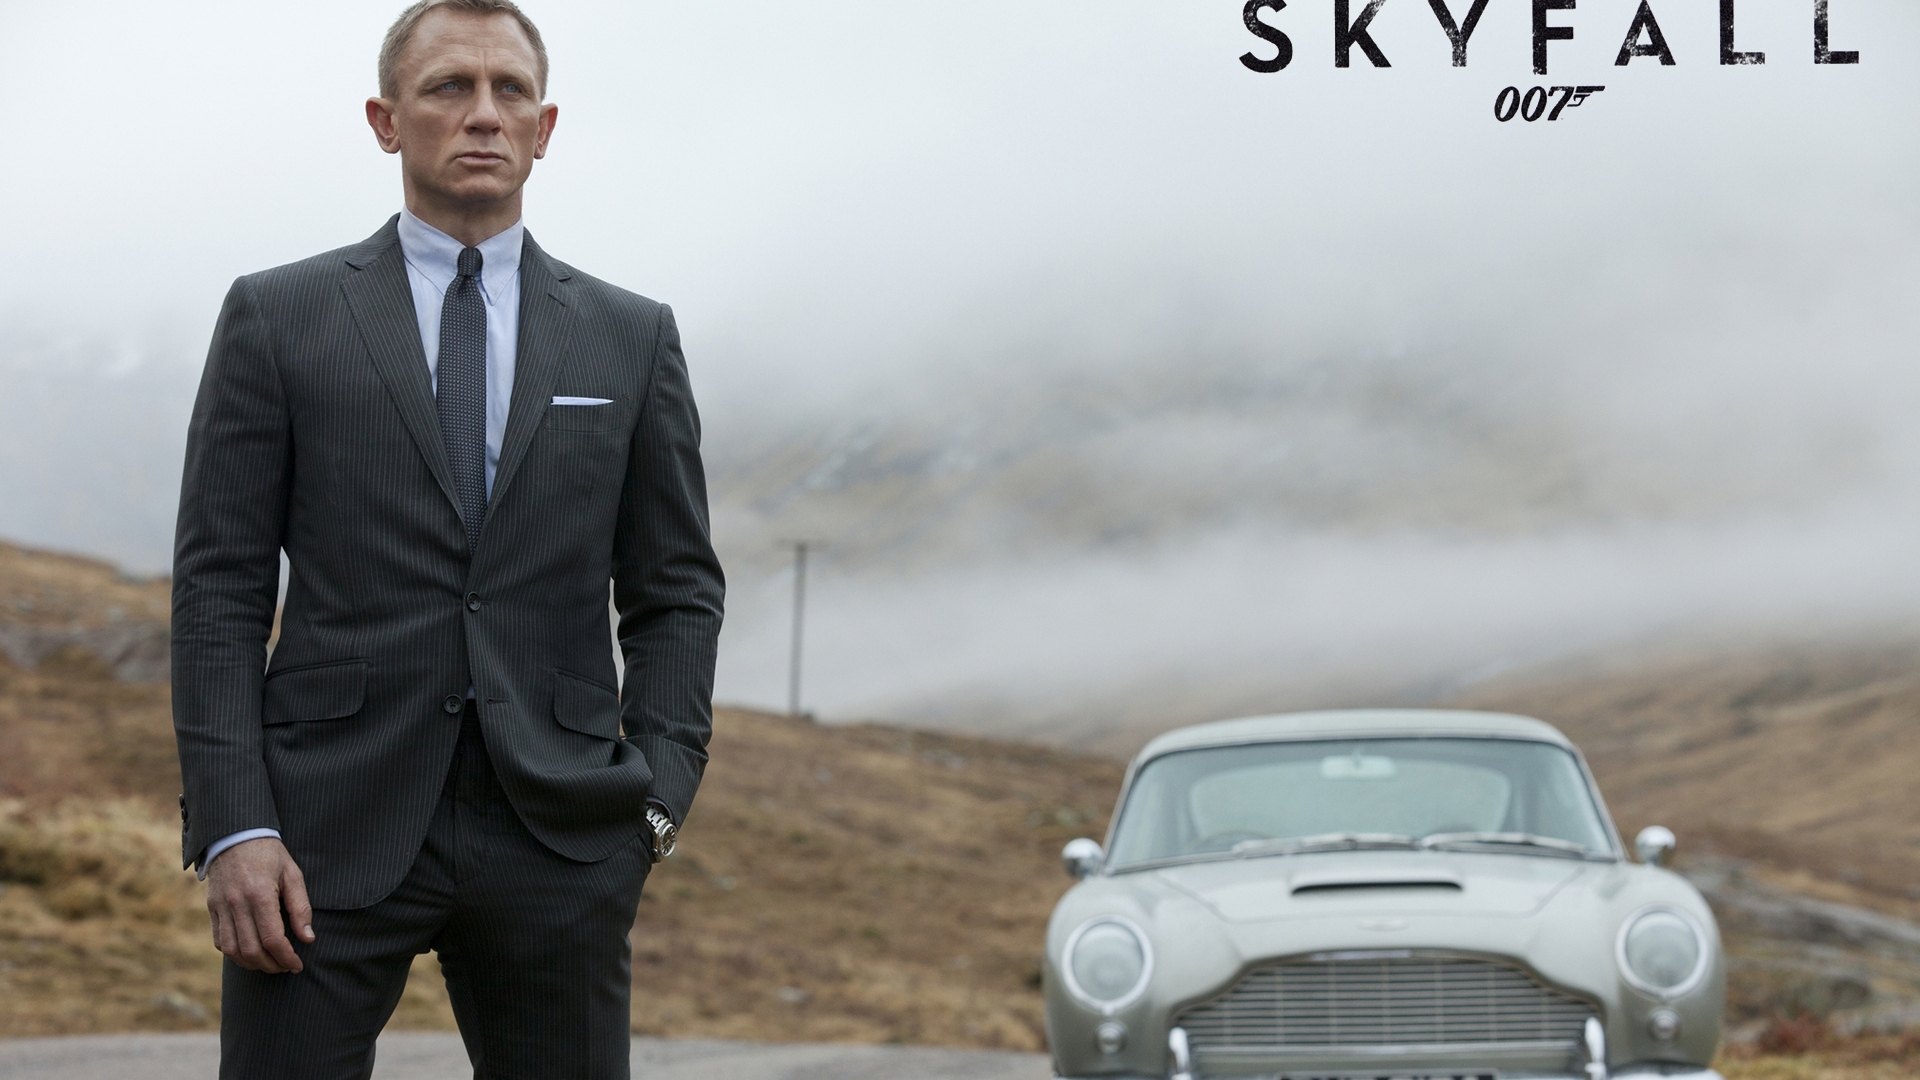 James Bond 007 Skyfall for 1920 x 1080 HDTV 1080p resolution